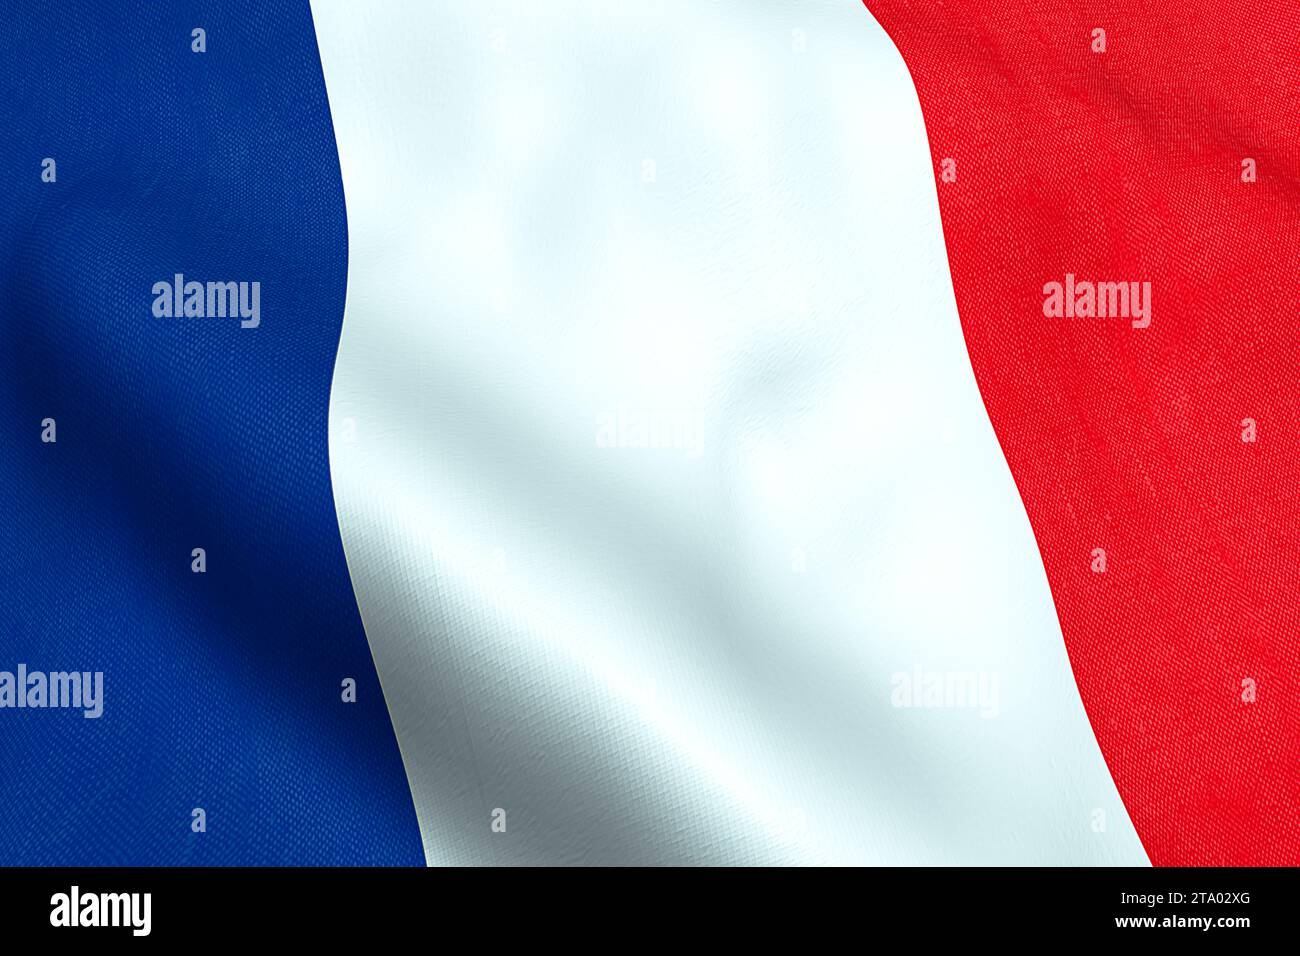 tessuto ondulato della bandiera della francia, rosso, bianco, blu della repubblica francese Foto Stock